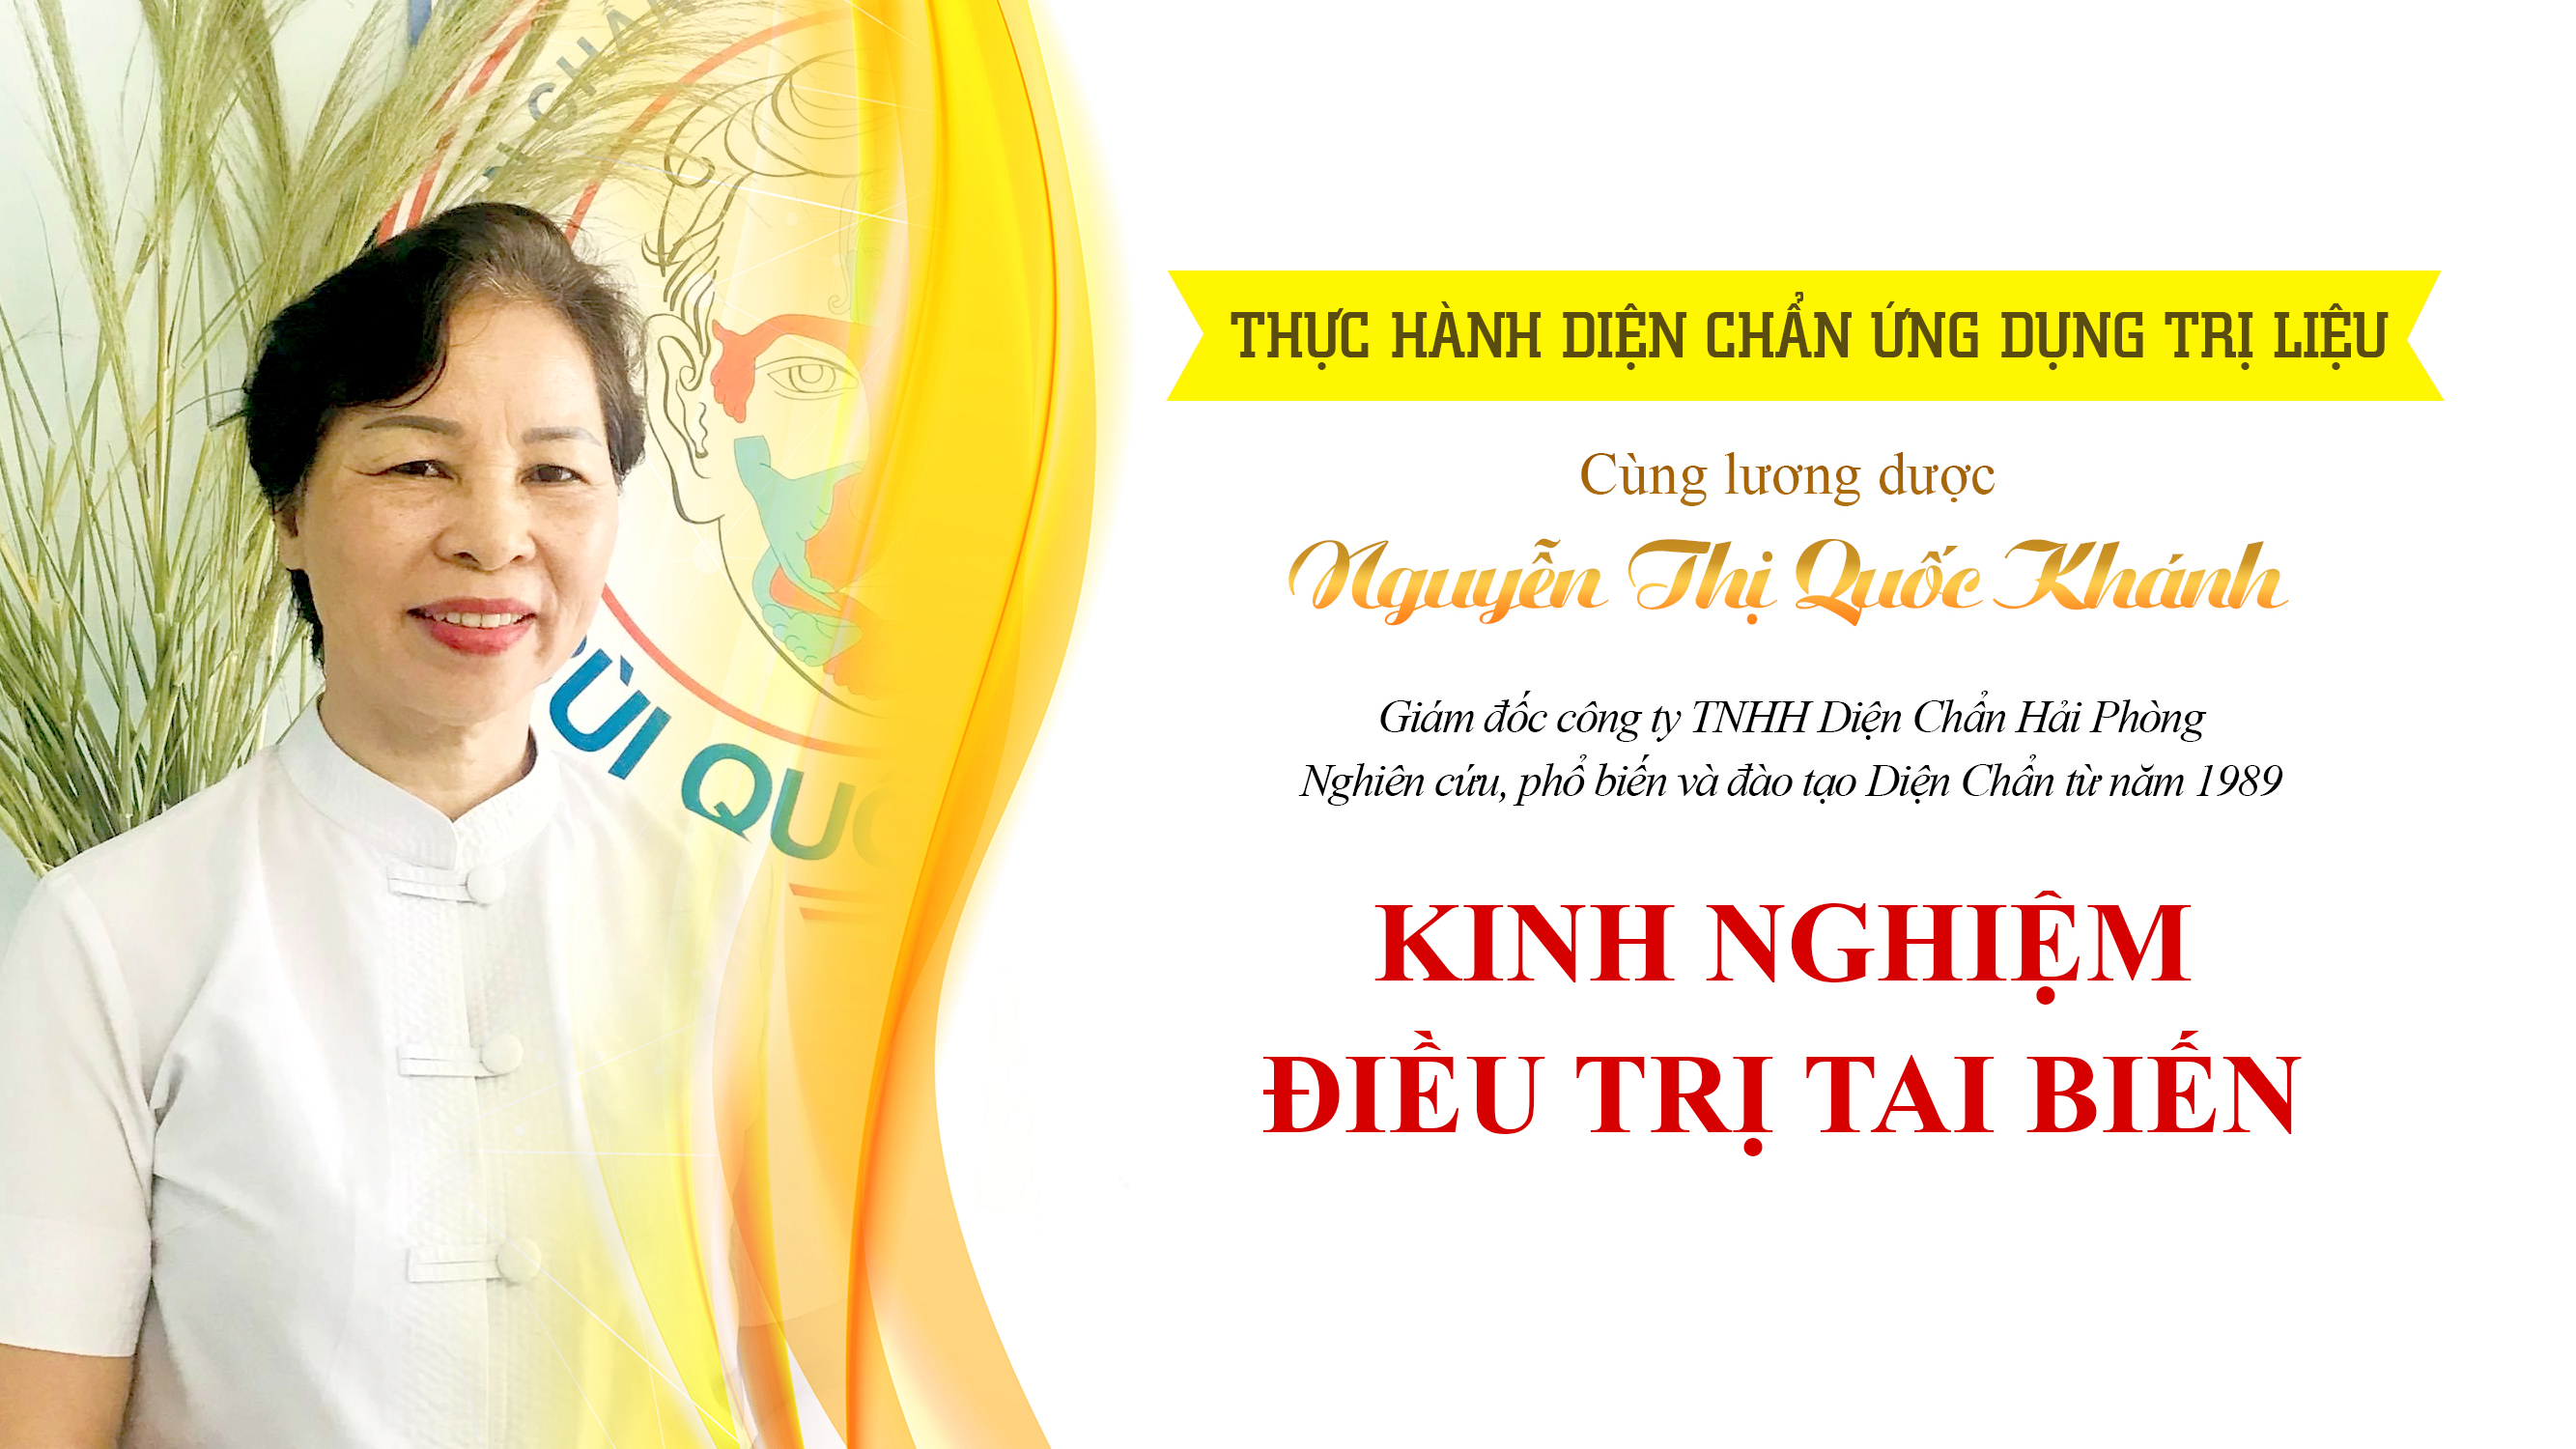 Thực hành điều trị Tai biến - Lương dược Nguyễn Thị Quốc Khánh